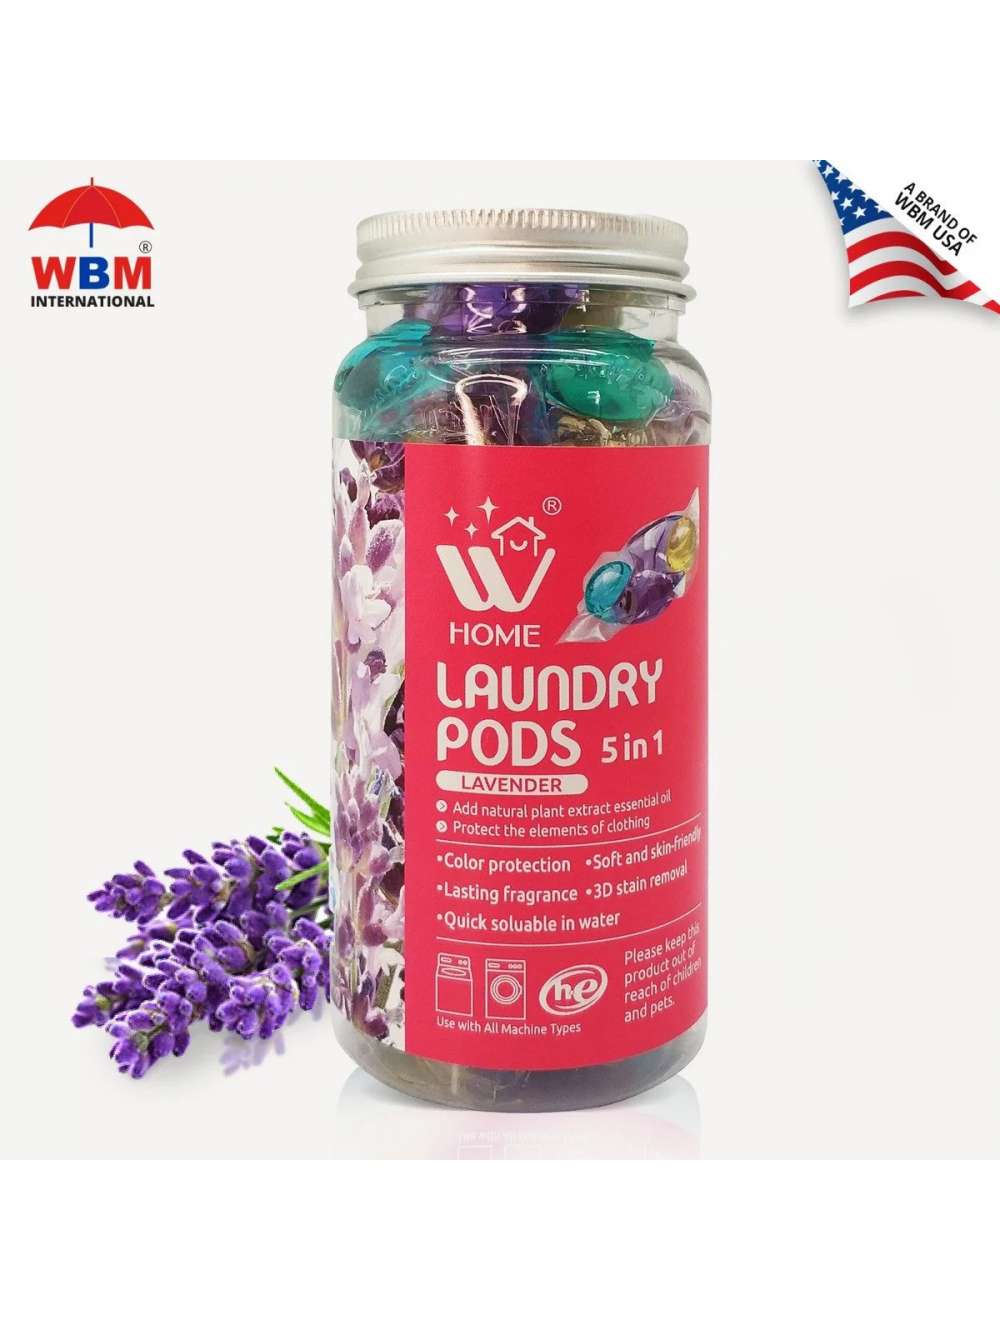 WBM Home Laundry Pods, Lavender Scent – 12 Count